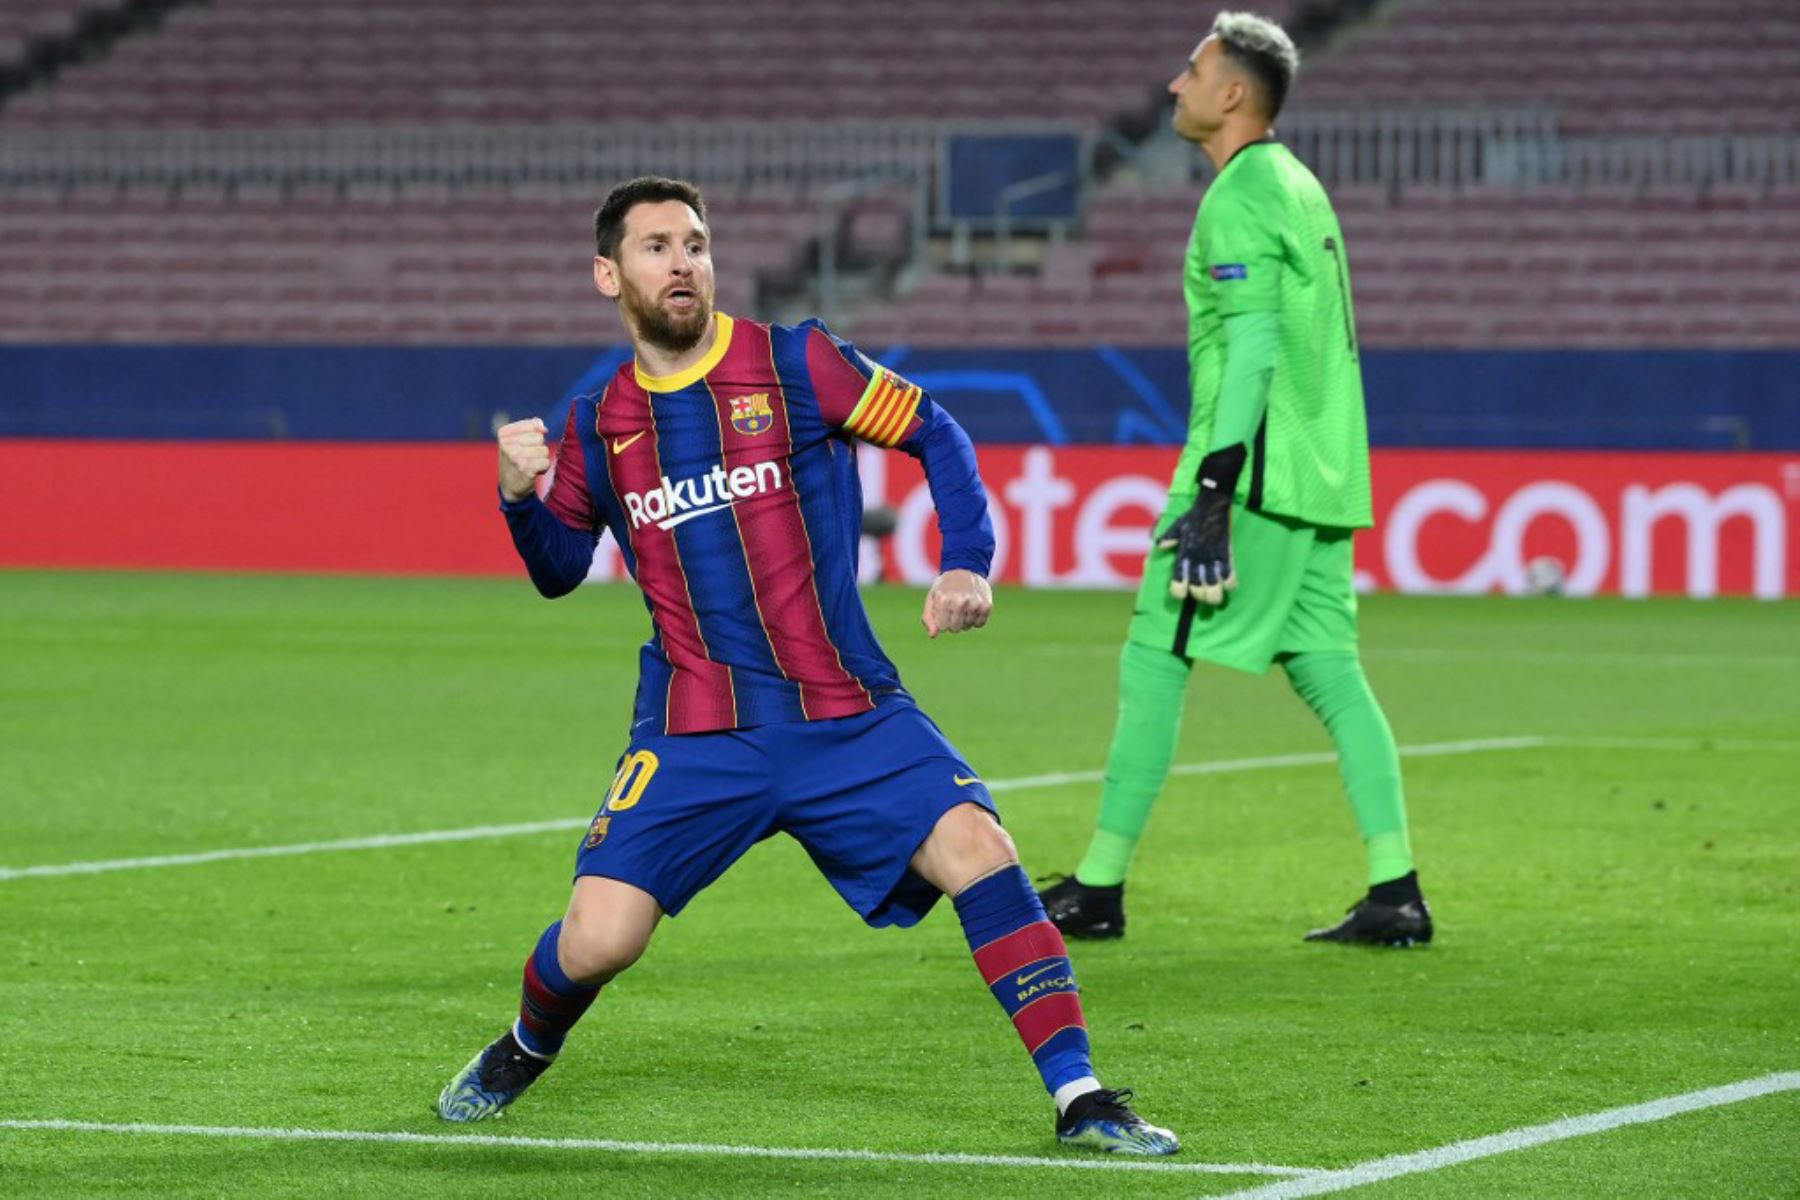 El delantero argentino del Barcelona Lionel Messi celebra tras marcar un gol durante el partido de ida de los octavos de final de la Liga de Campeones de la UEFA entre el FC Barcelona y el Paris Saint-Germain FC en el estadio Camp Nou.

Foto: AFP